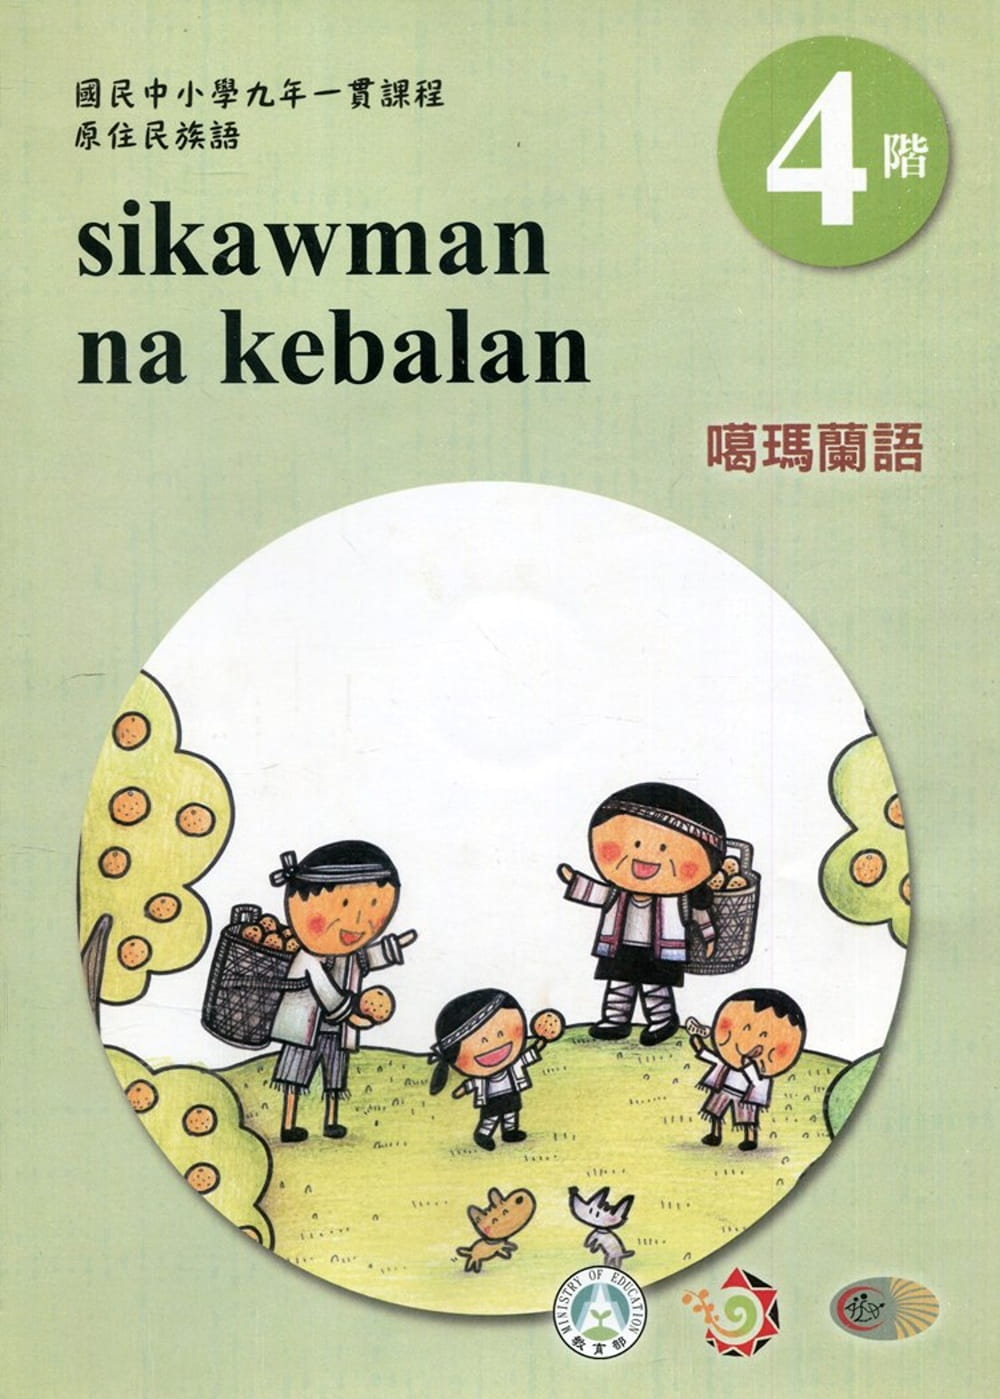 噶瑪蘭語學習手冊第4階(附光碟)3版2刷